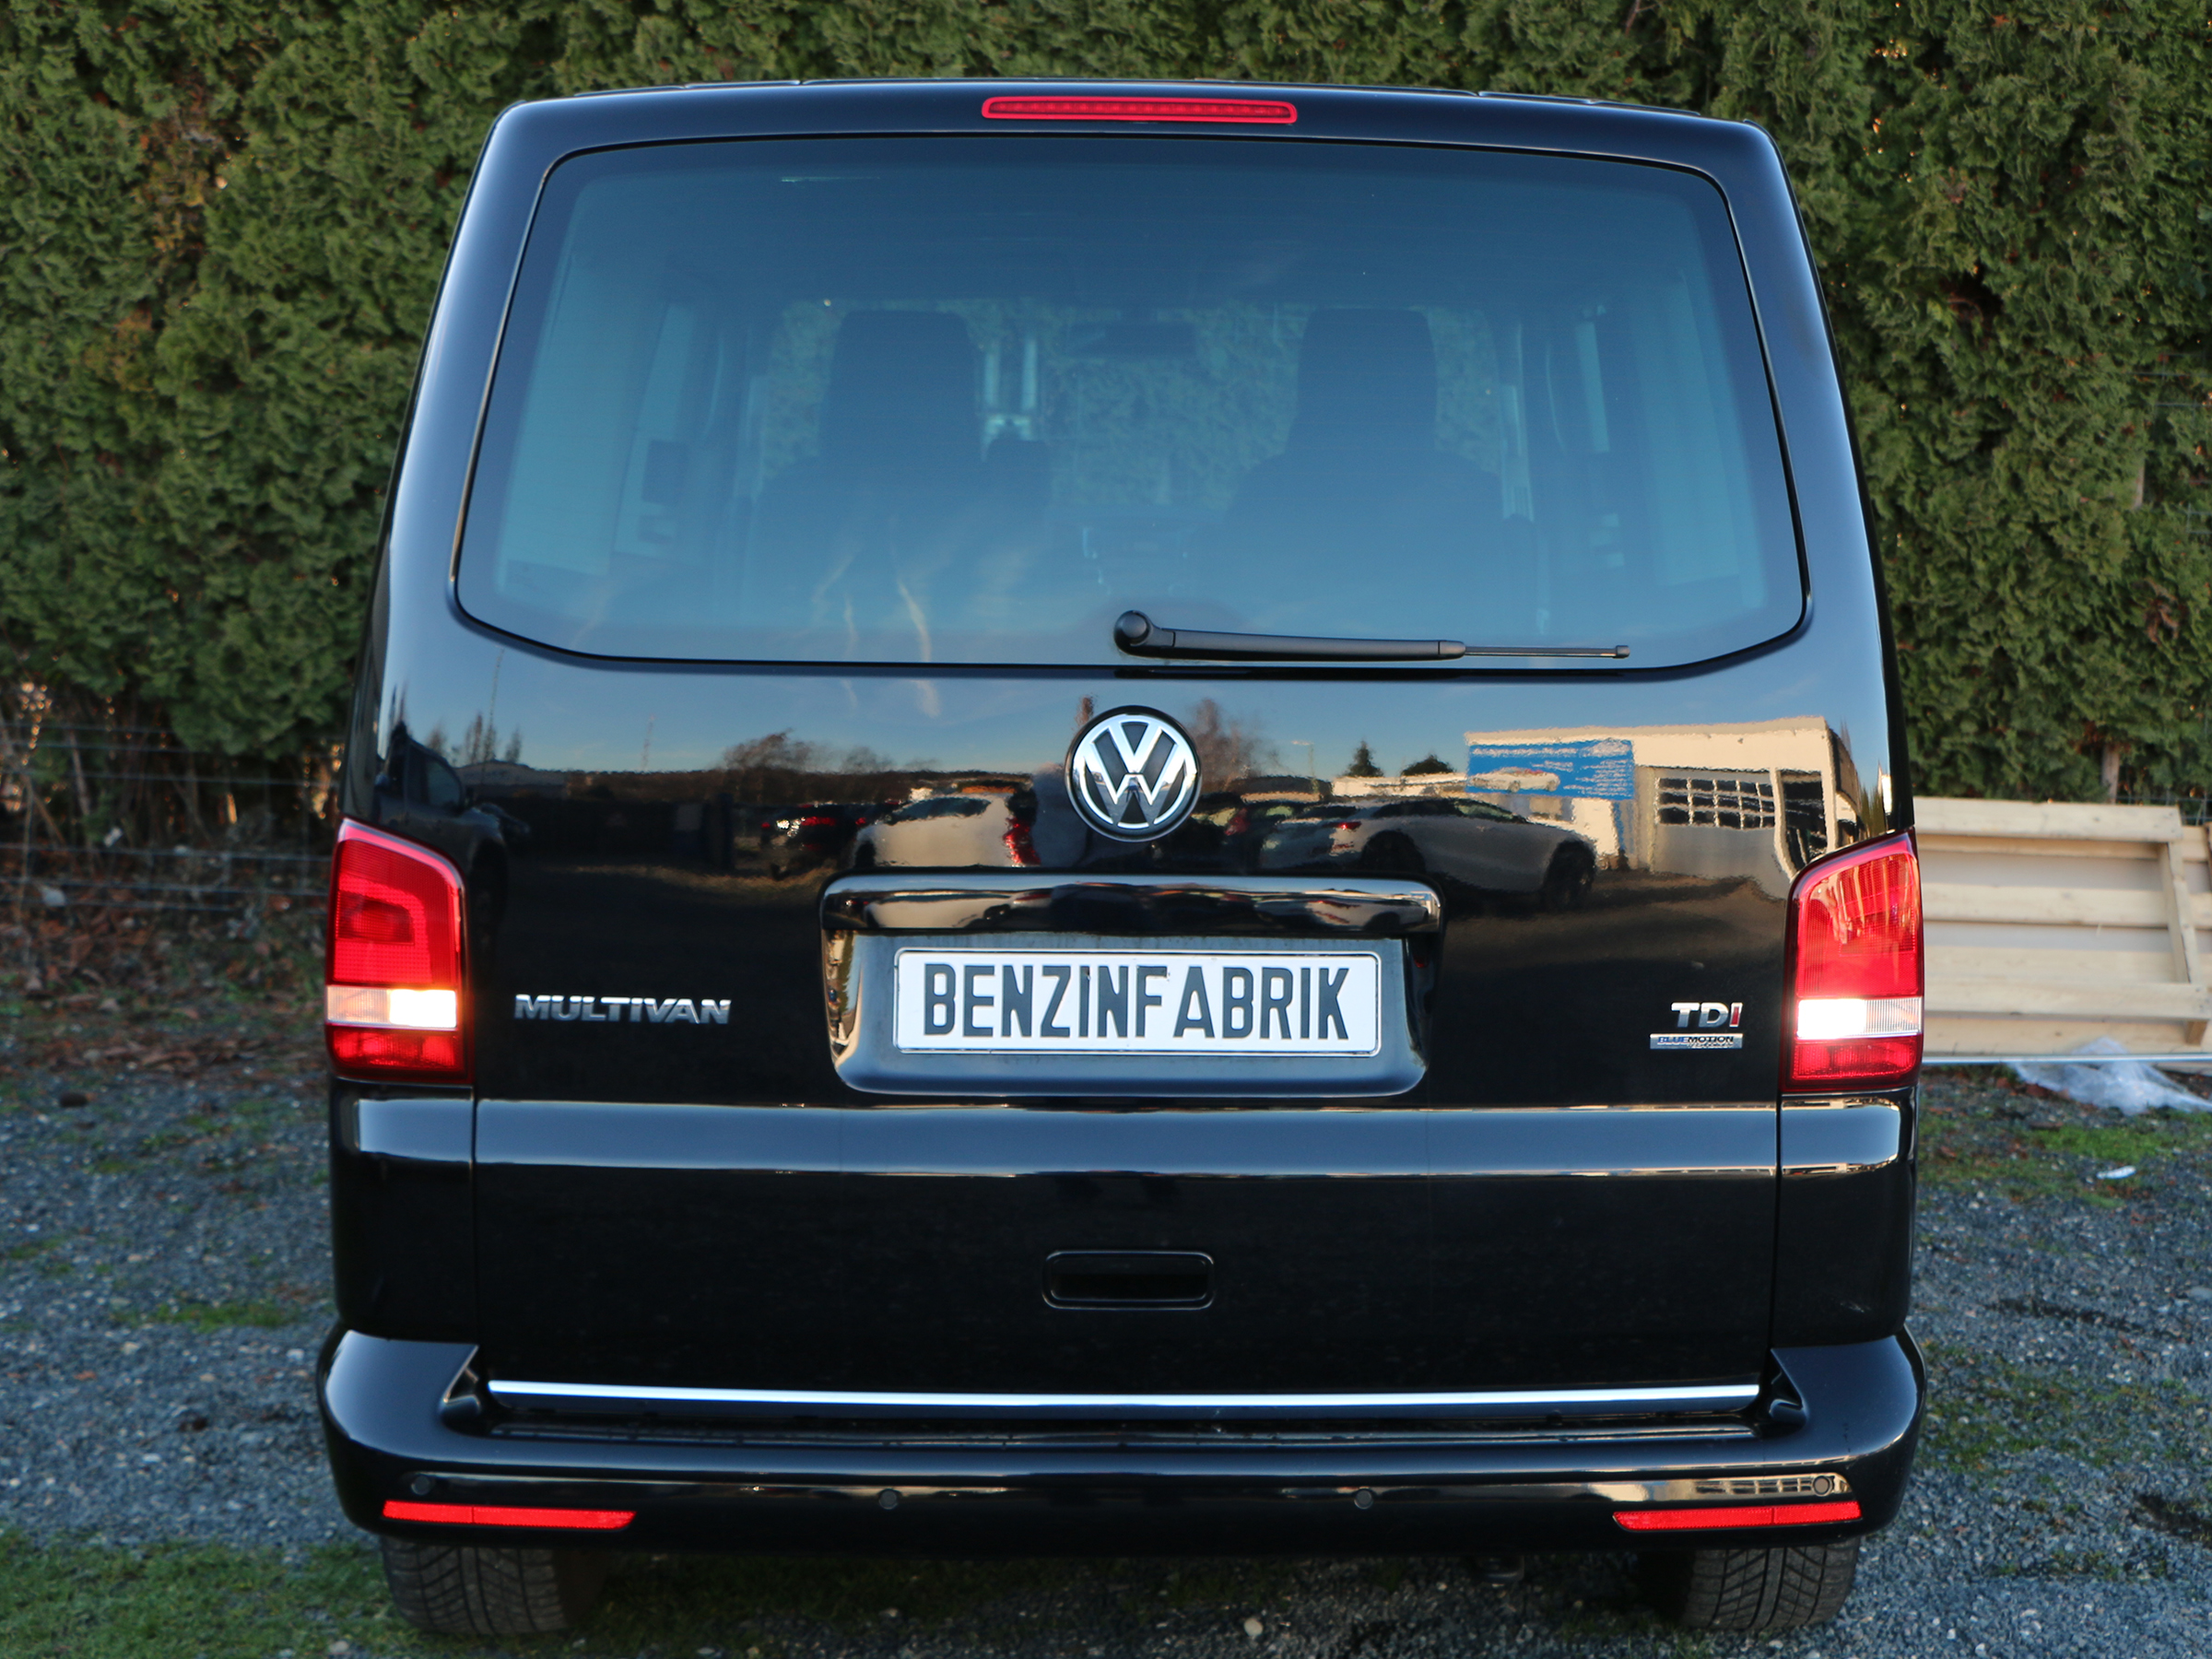 10x5 W CREE® LED Rückfahrlicht VW Touareg C2, weiss, LED Rückfahrlicht  Volkswagen, LED Rückfahrlicht